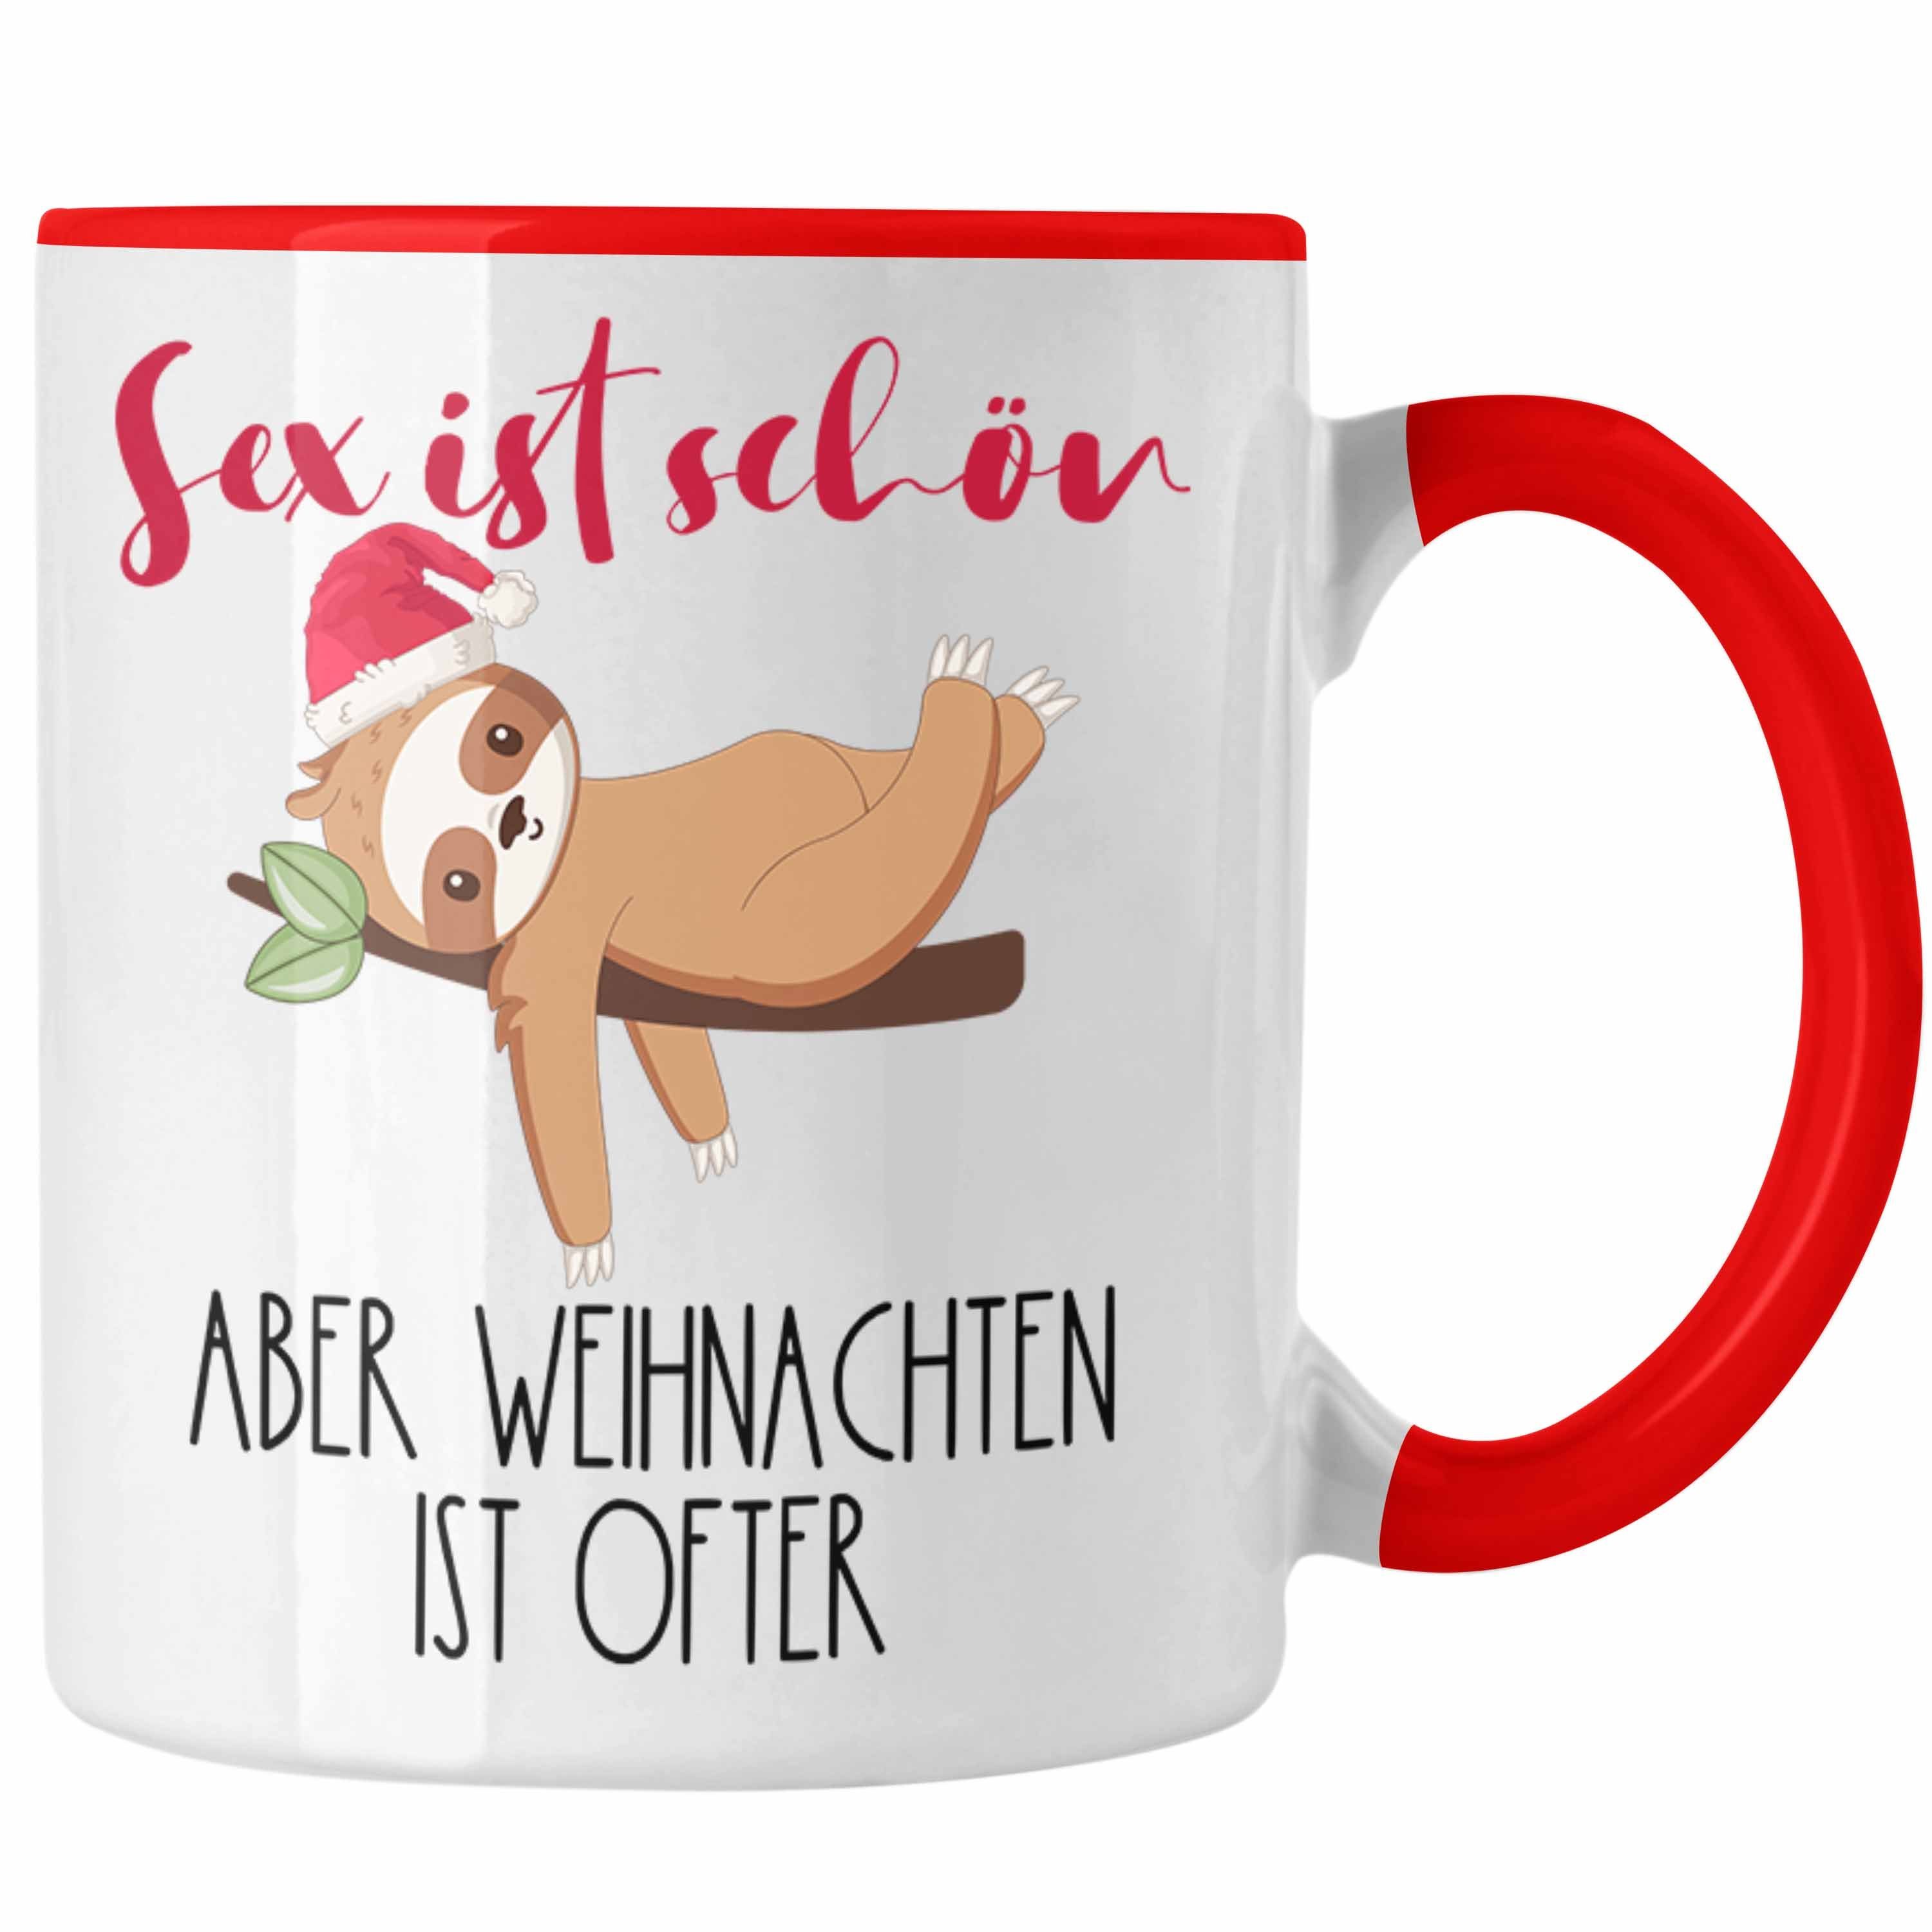 Trendation Tasse S** Ist Schön Aber Weihnachten Ist Öfter Tasse Geschenk Freunde mit Hu Rot | Teetassen